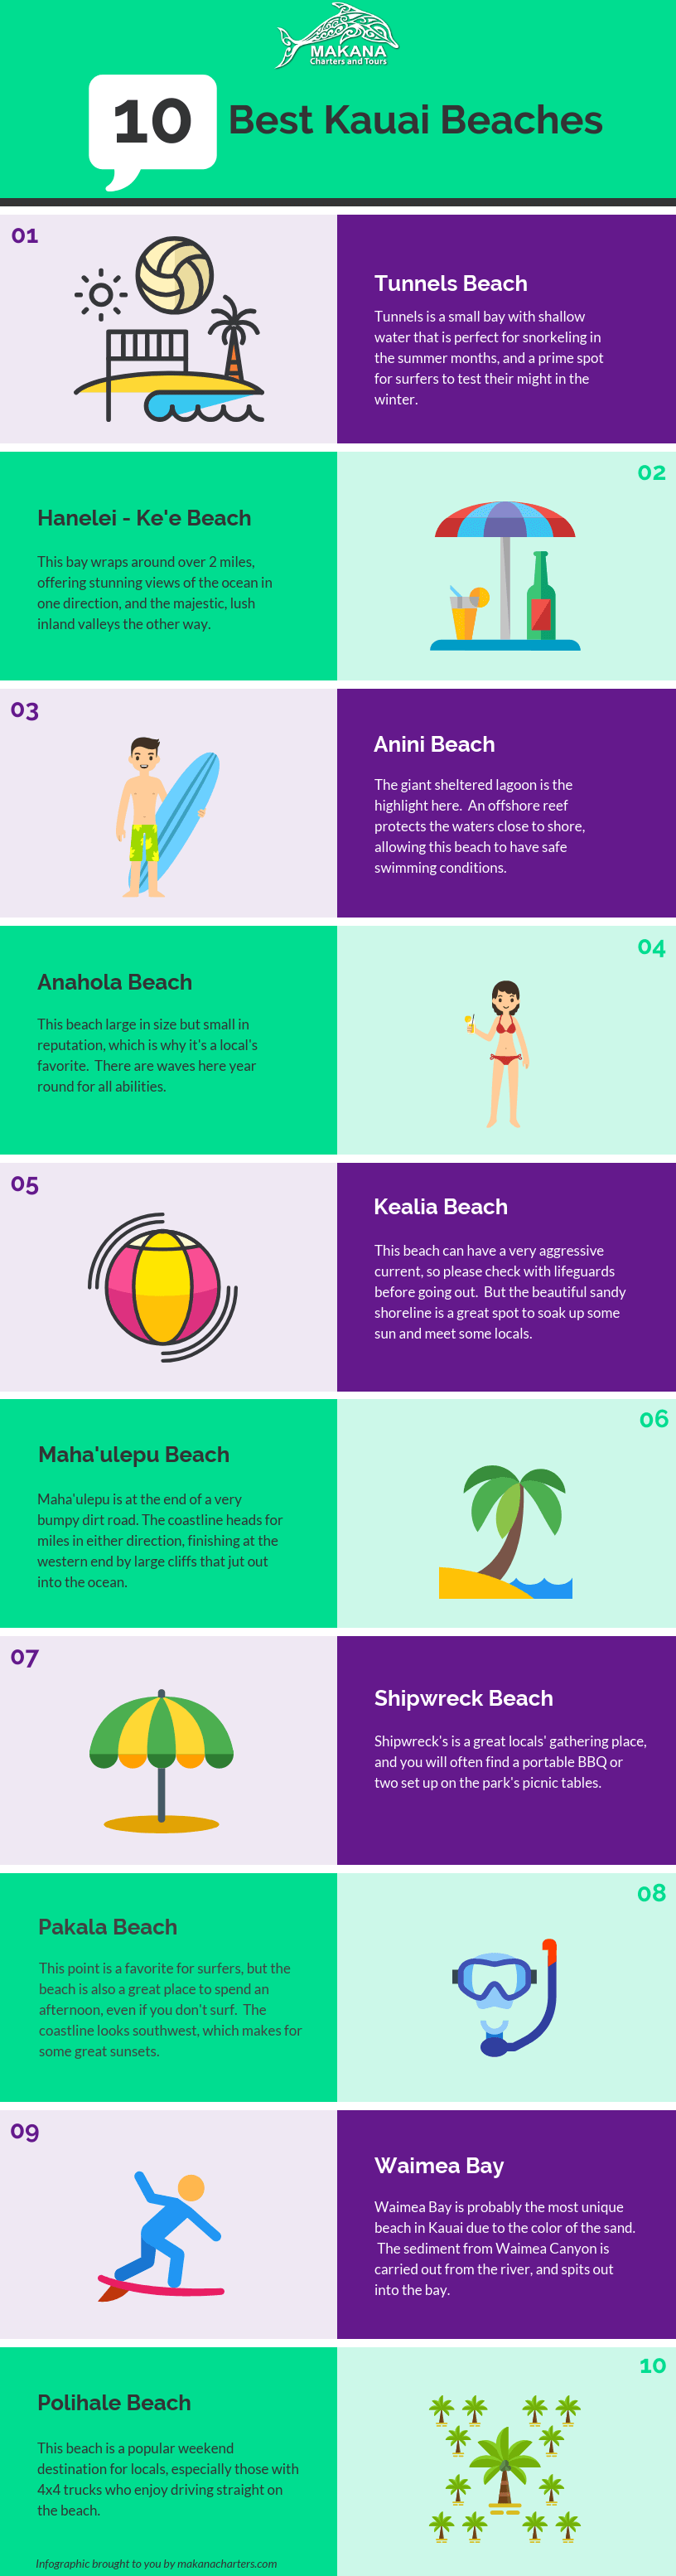 Top 10 Kauai Beaches (With Kauai Map) | Makana's Local Guide